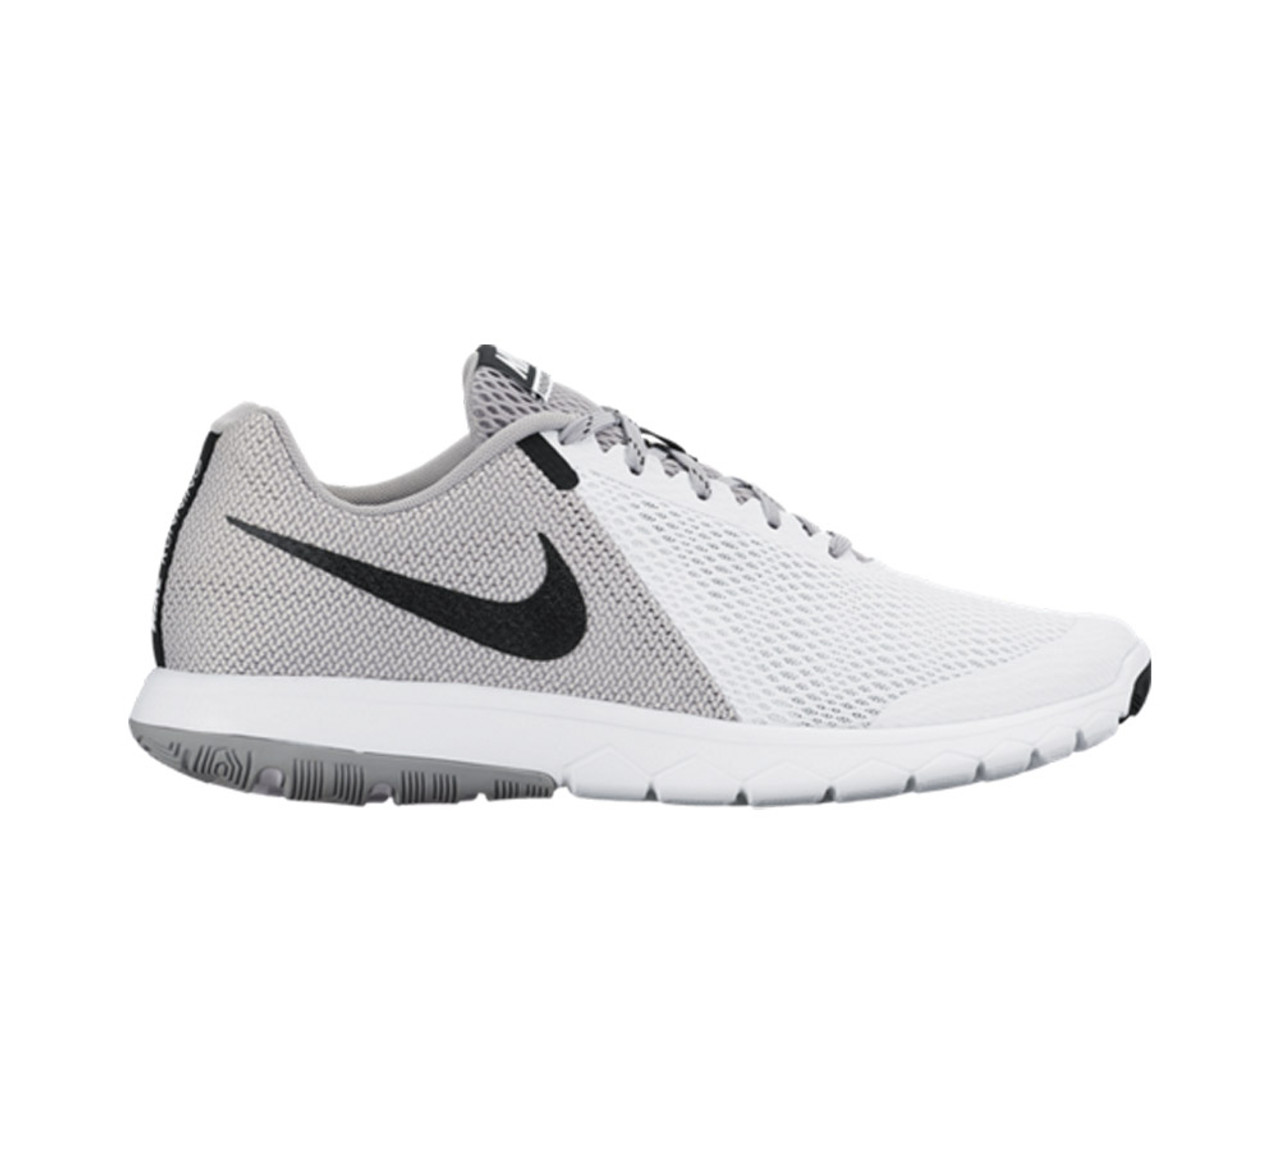 Nike Men's Flex Experience RN 5 Running Shoe White/Black